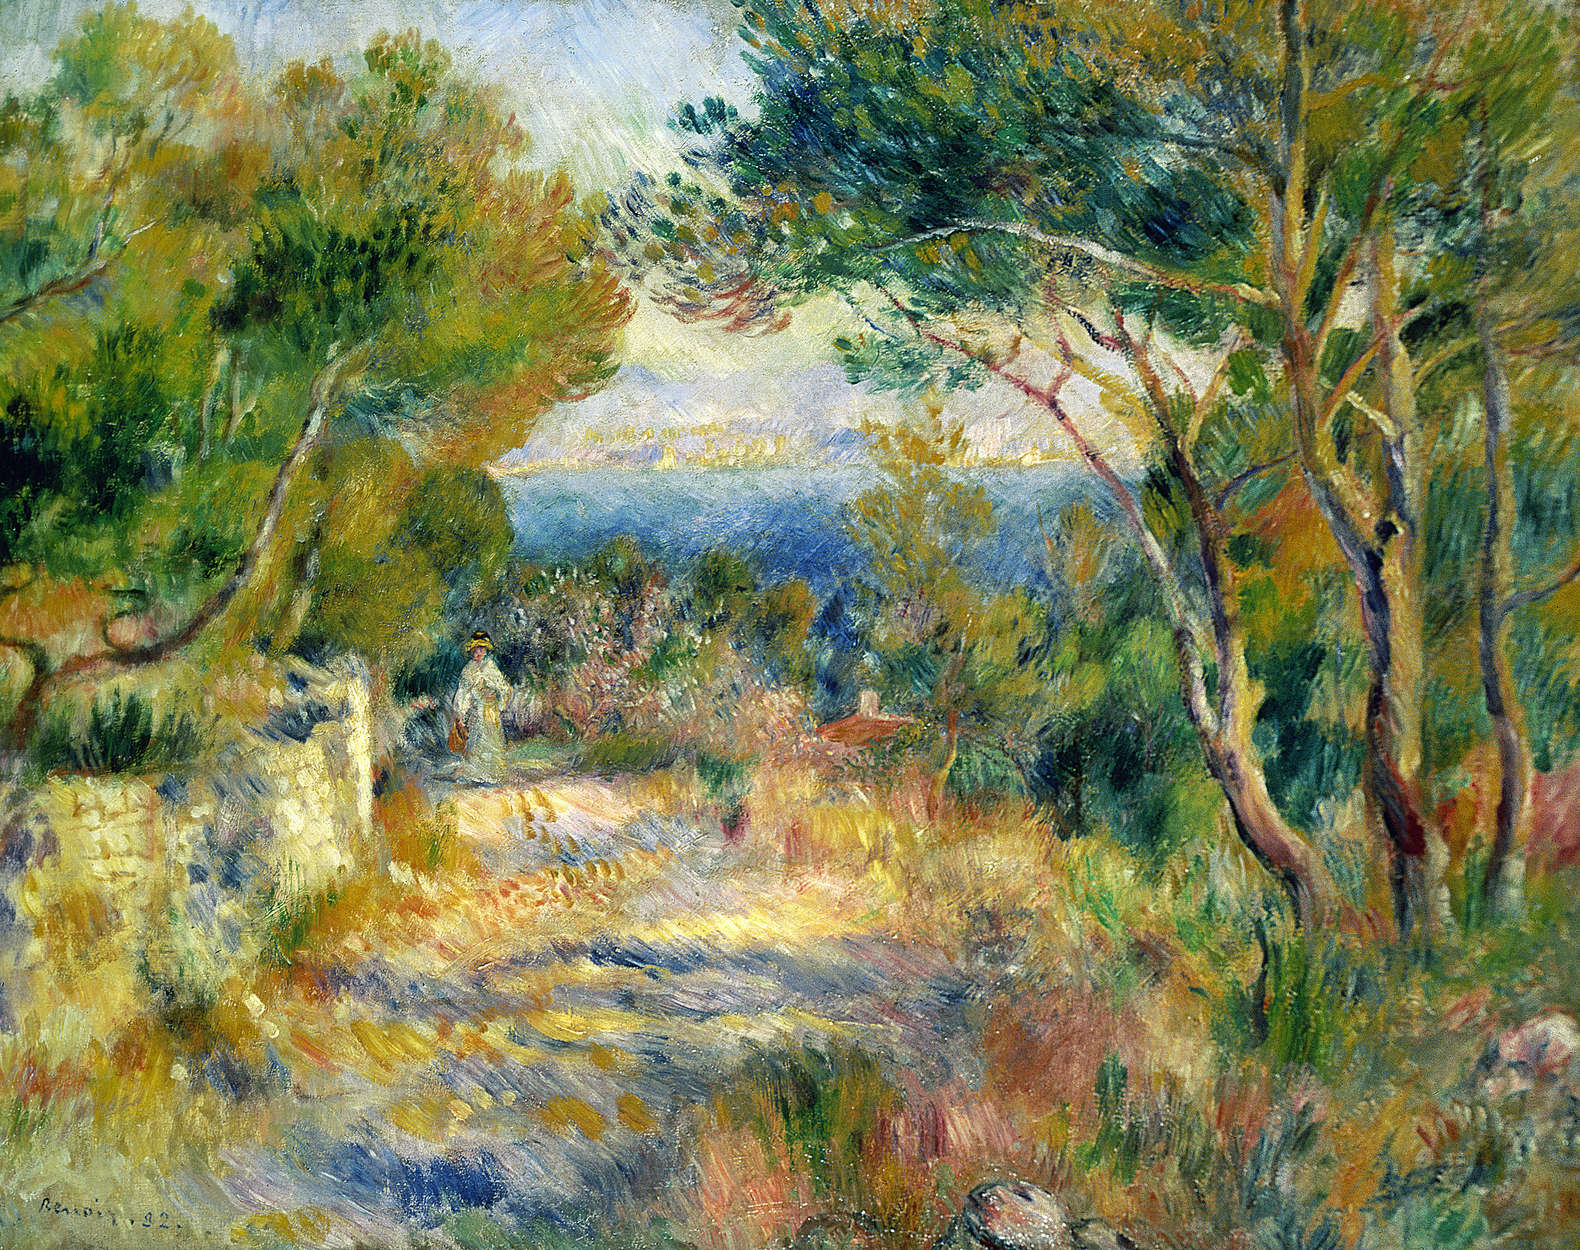             Papier peint panoramique "L'Estaque" de Pierre Auguste Renoir
        